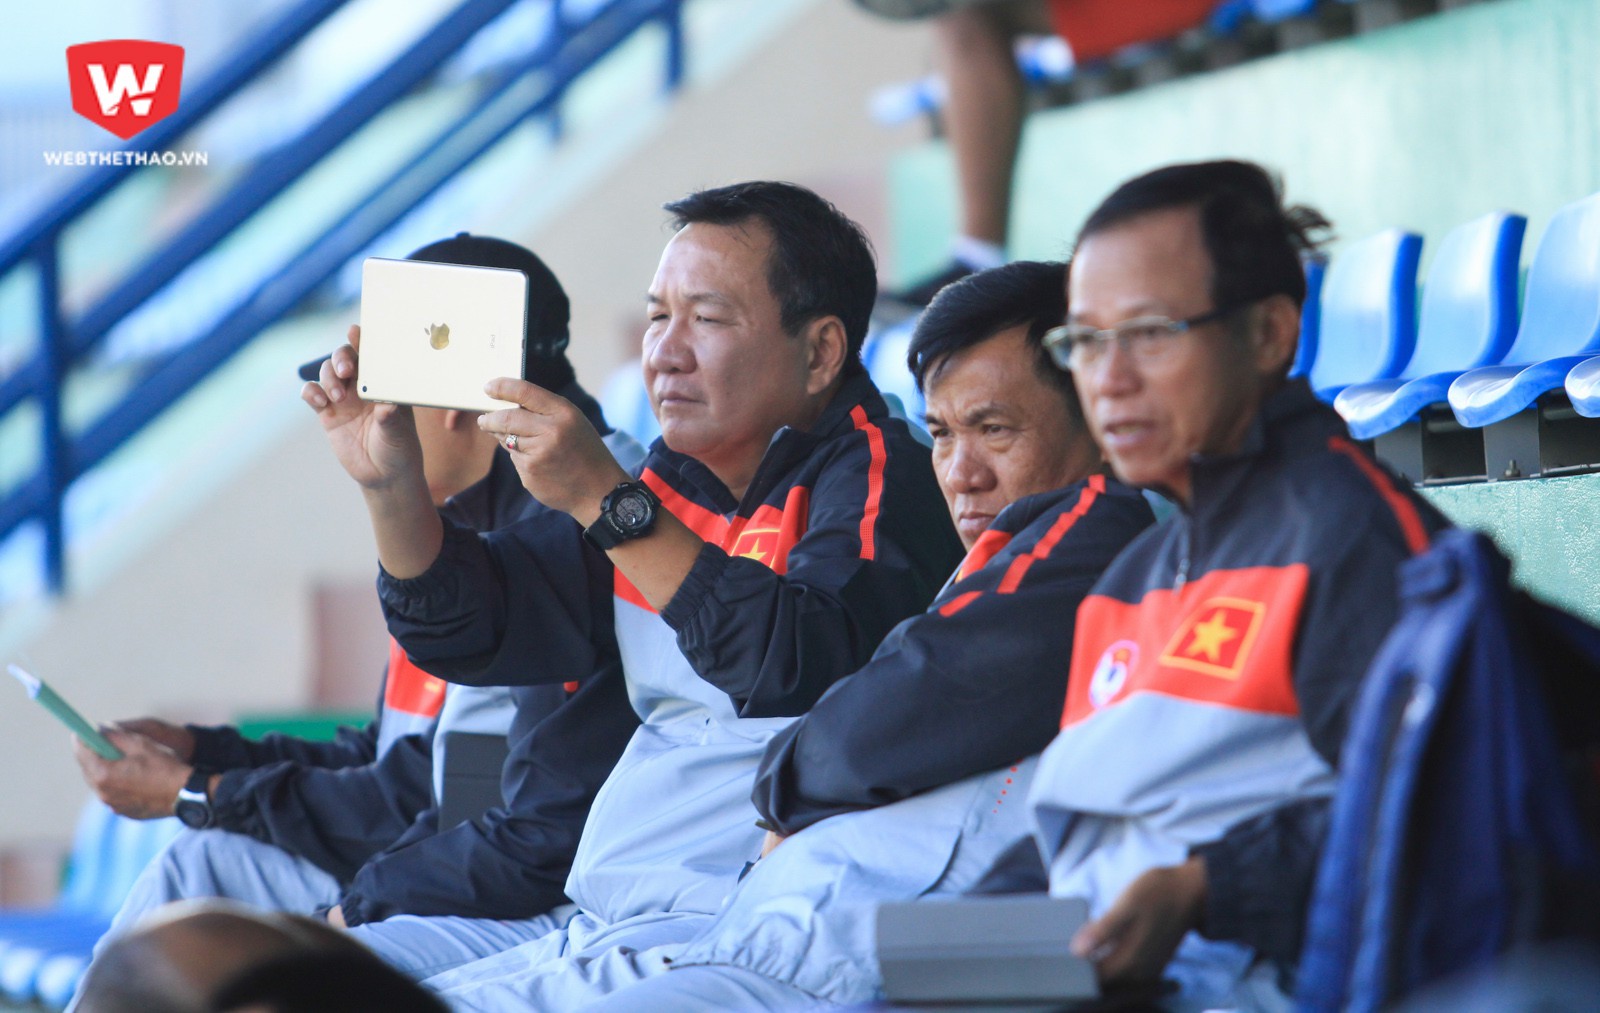 HLV Hoàng Văn Phúc, người vừa cùng Quảng Nam FC giành chức vô địch V.League 2017 cũng có mặt. Ảnh: Trung Thu.